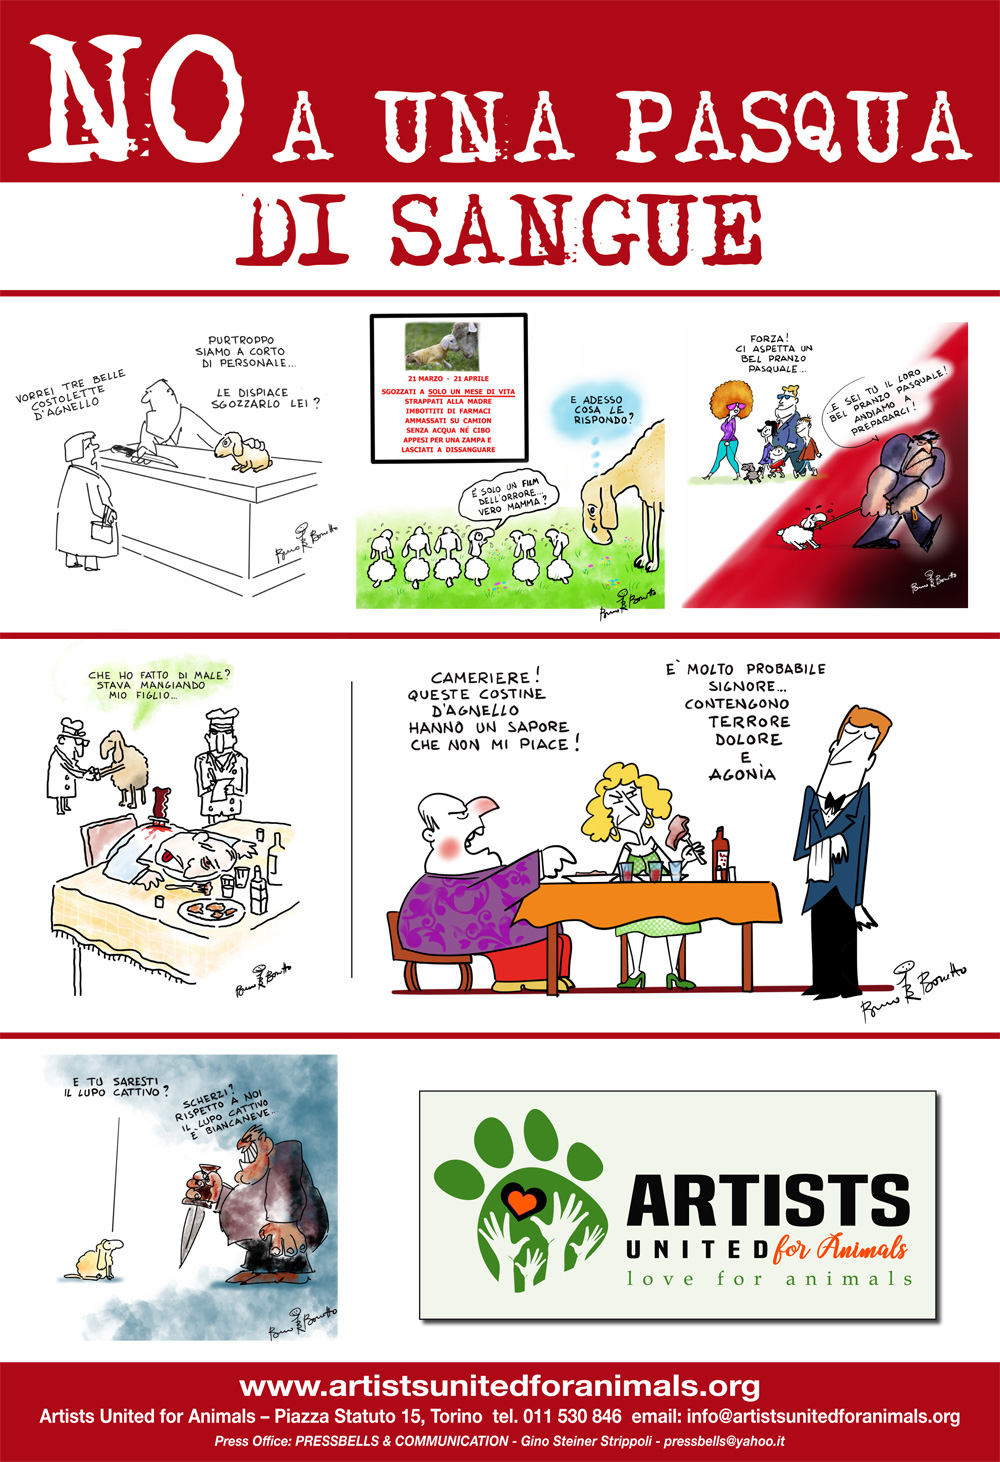 Le vignette di Bruno Bozzetto per l'iniziativa "NO a una PASQUA DI SANGUE"